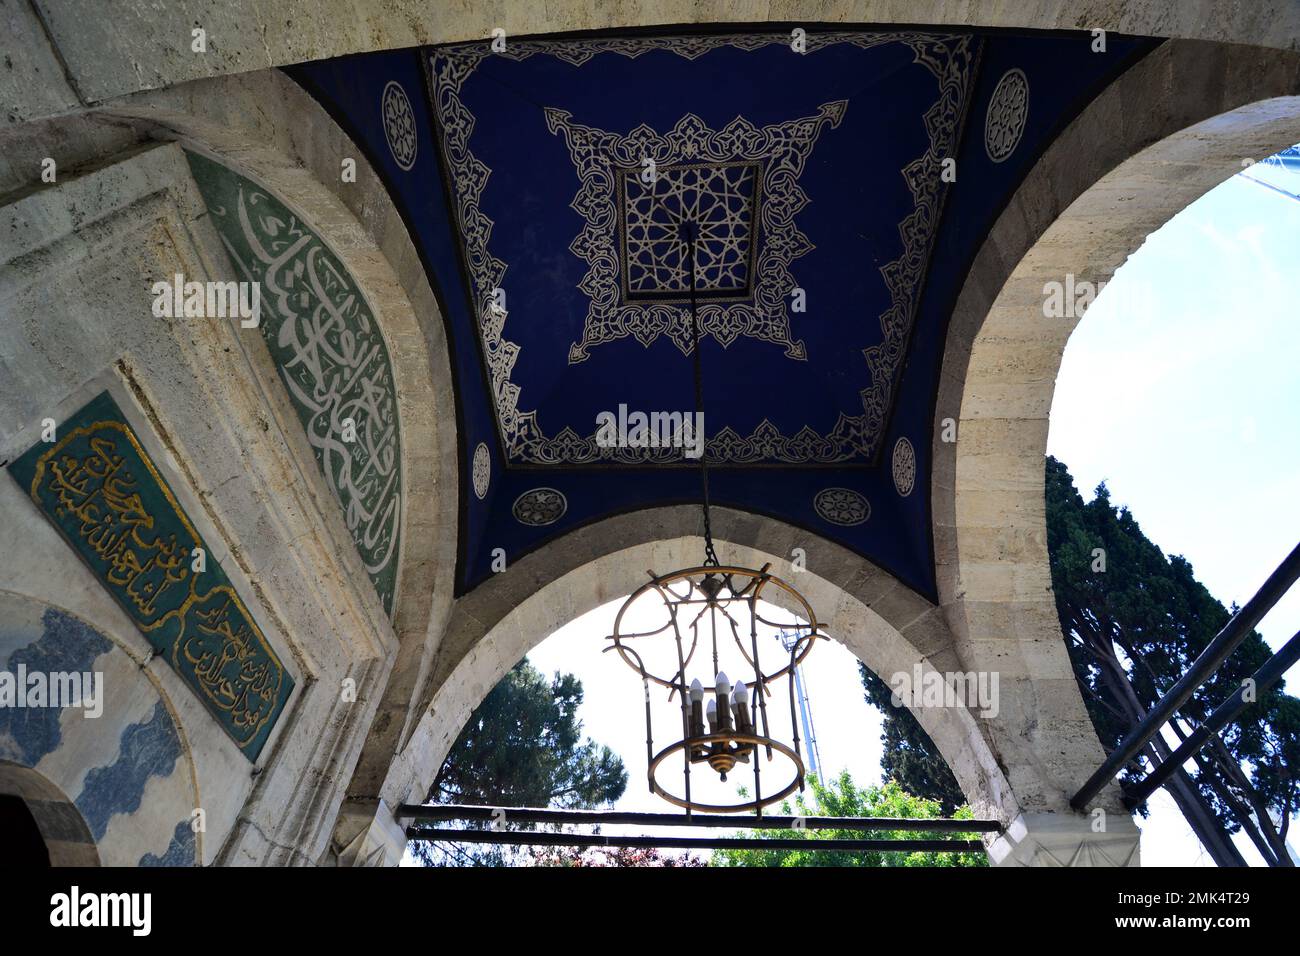 Barbaros Hayreddin Pasha Tomb si trova a Besiktas, Turchia. La tomba è stata costruita da Mimar Sinan nel 16th ° secolo. Foto Stock